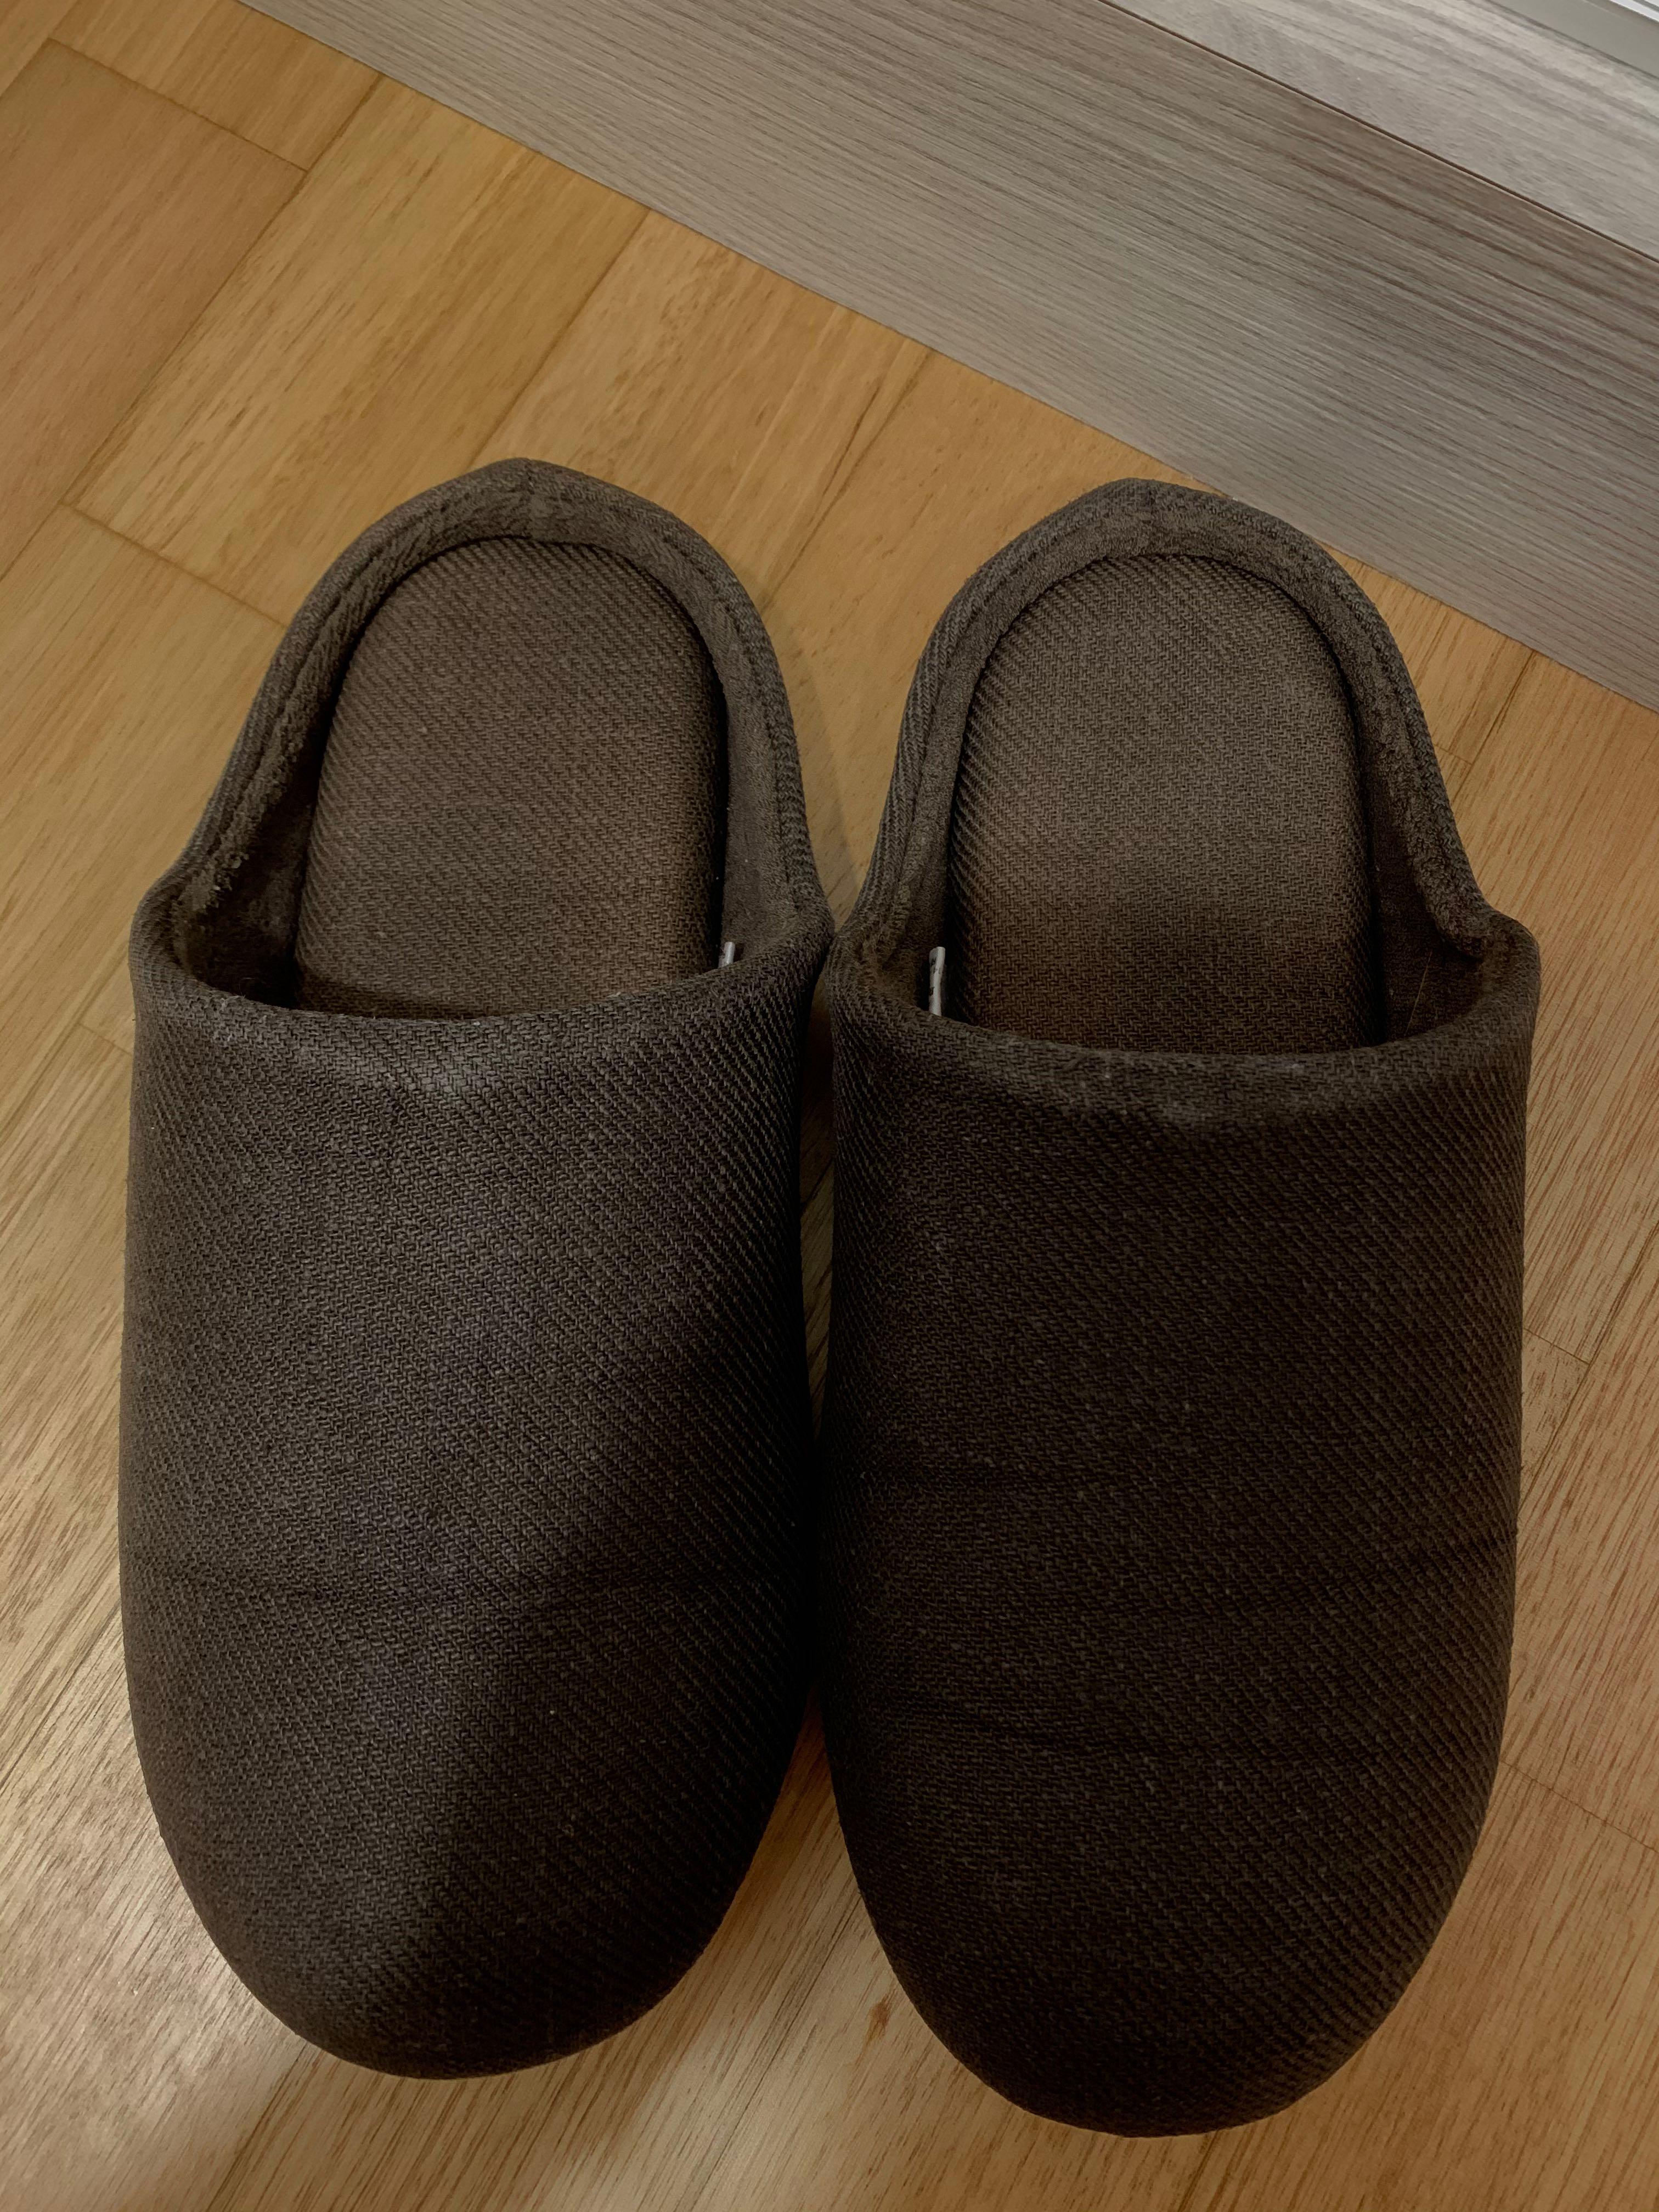 muji house slippers